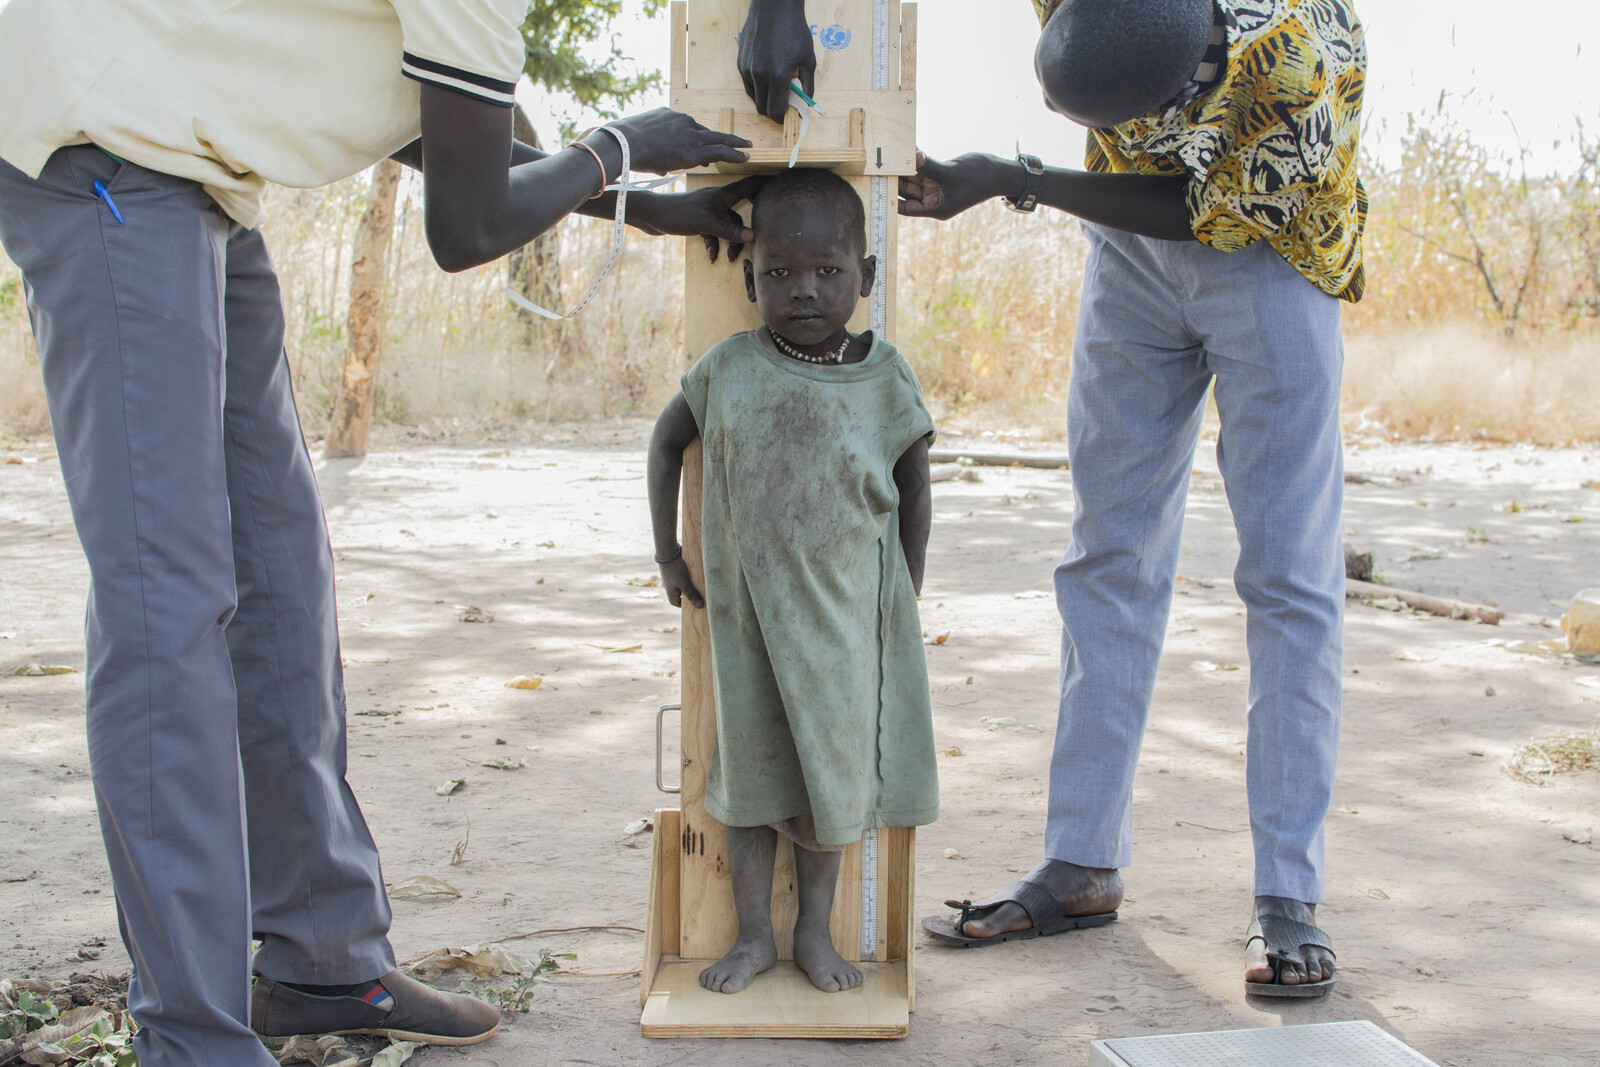 Helfer messen die Größe eines Mädchens in Kenia.